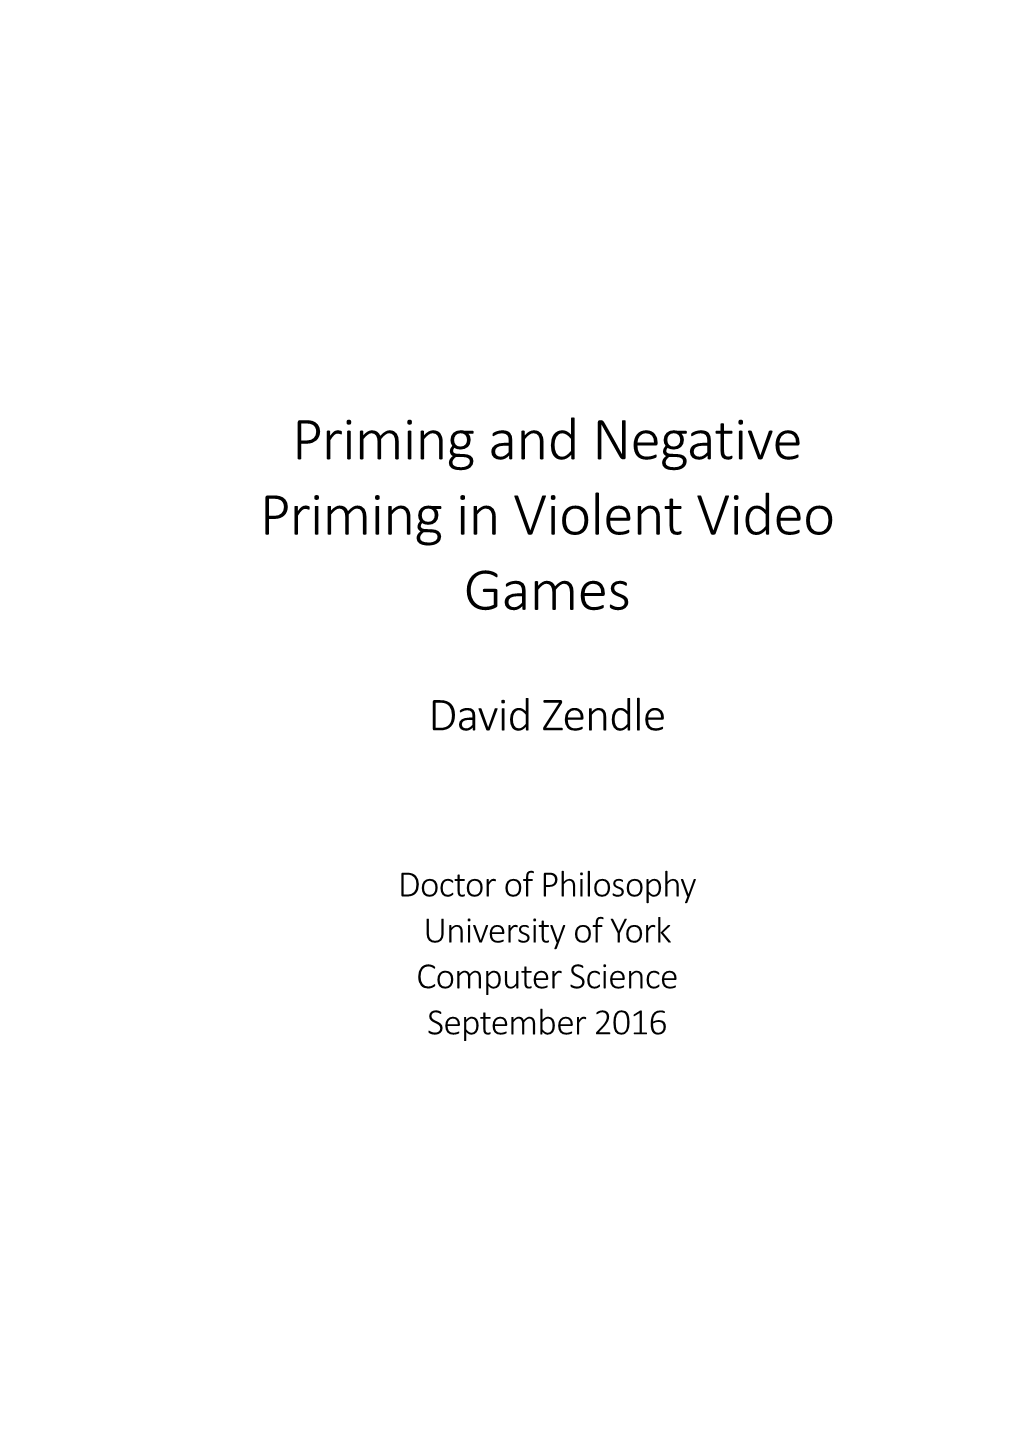 Priming and Negative Priming in Violent Video Games